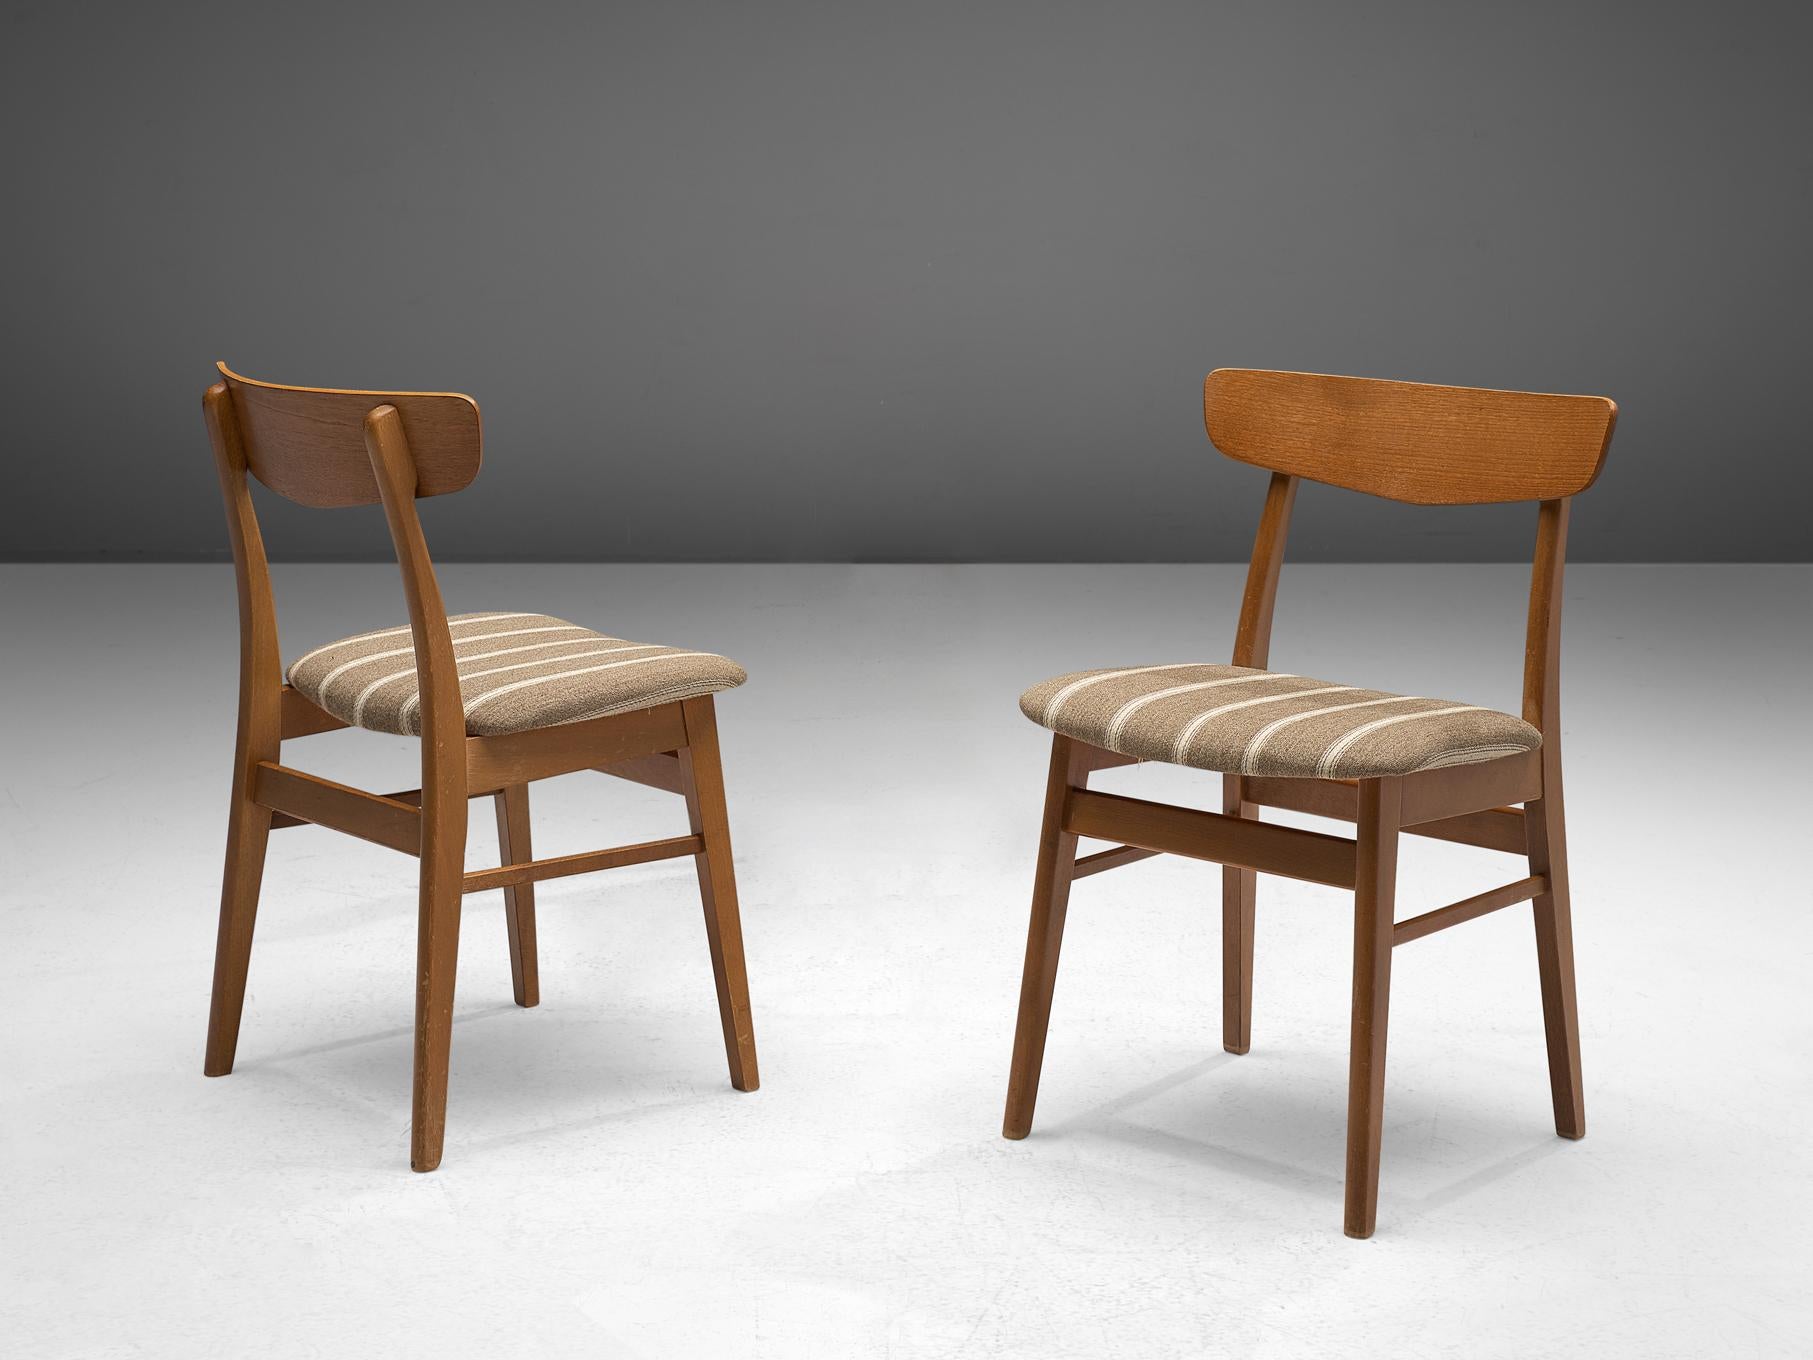 Chaises de salle à manger en teck, Danemark, années 1960

Ces chaises de salle à manger danoises de bonne facture ont une apparence convaincante et une construction typique des meubles de style danois des années 1960, présentant une ressemblance